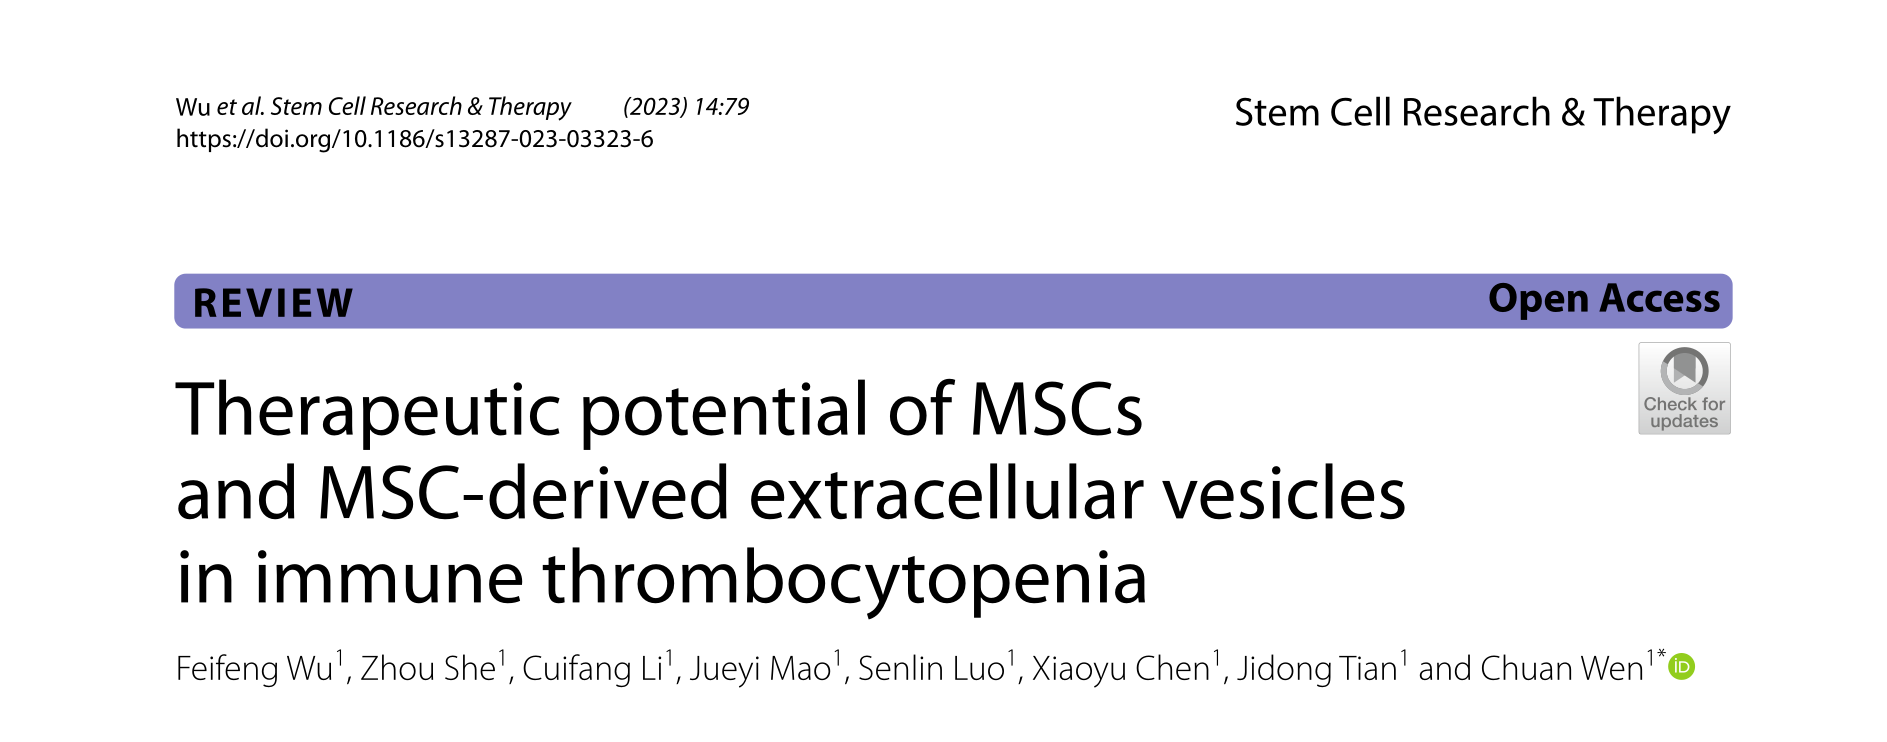 Stem Cell Research & Therapy | 中南大学湘雅二医院文川教授团队:MSC及MSC-EVs在免疫性血小板减少症中的治疗潜能